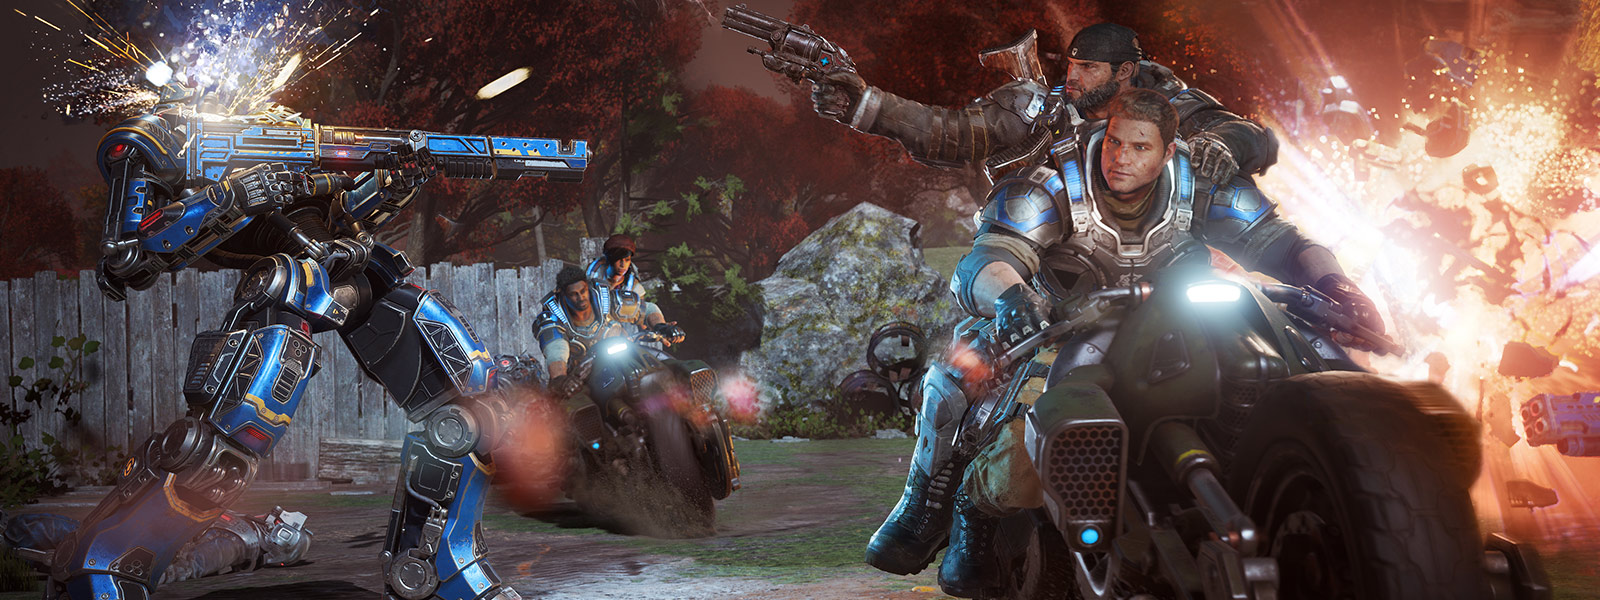 JD Fenix et ses amis utilisent des armes et conduisent des motos pendant une bataille dans le jeu Gears of War 4